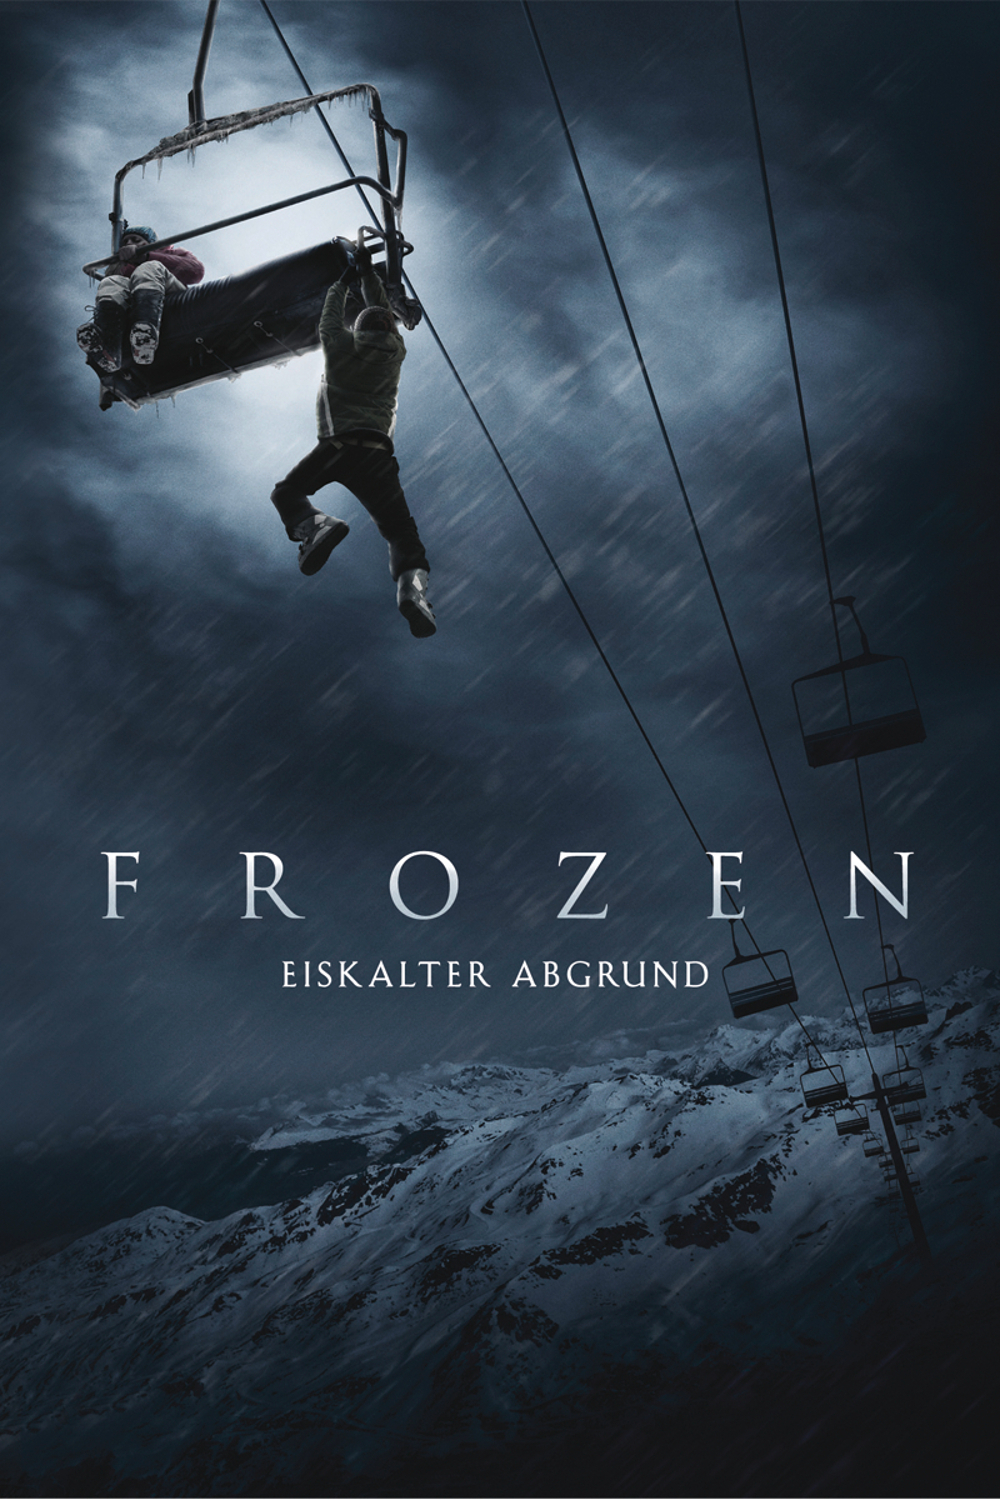 Plakat von "Frozen - Eiskalter Abgrund"